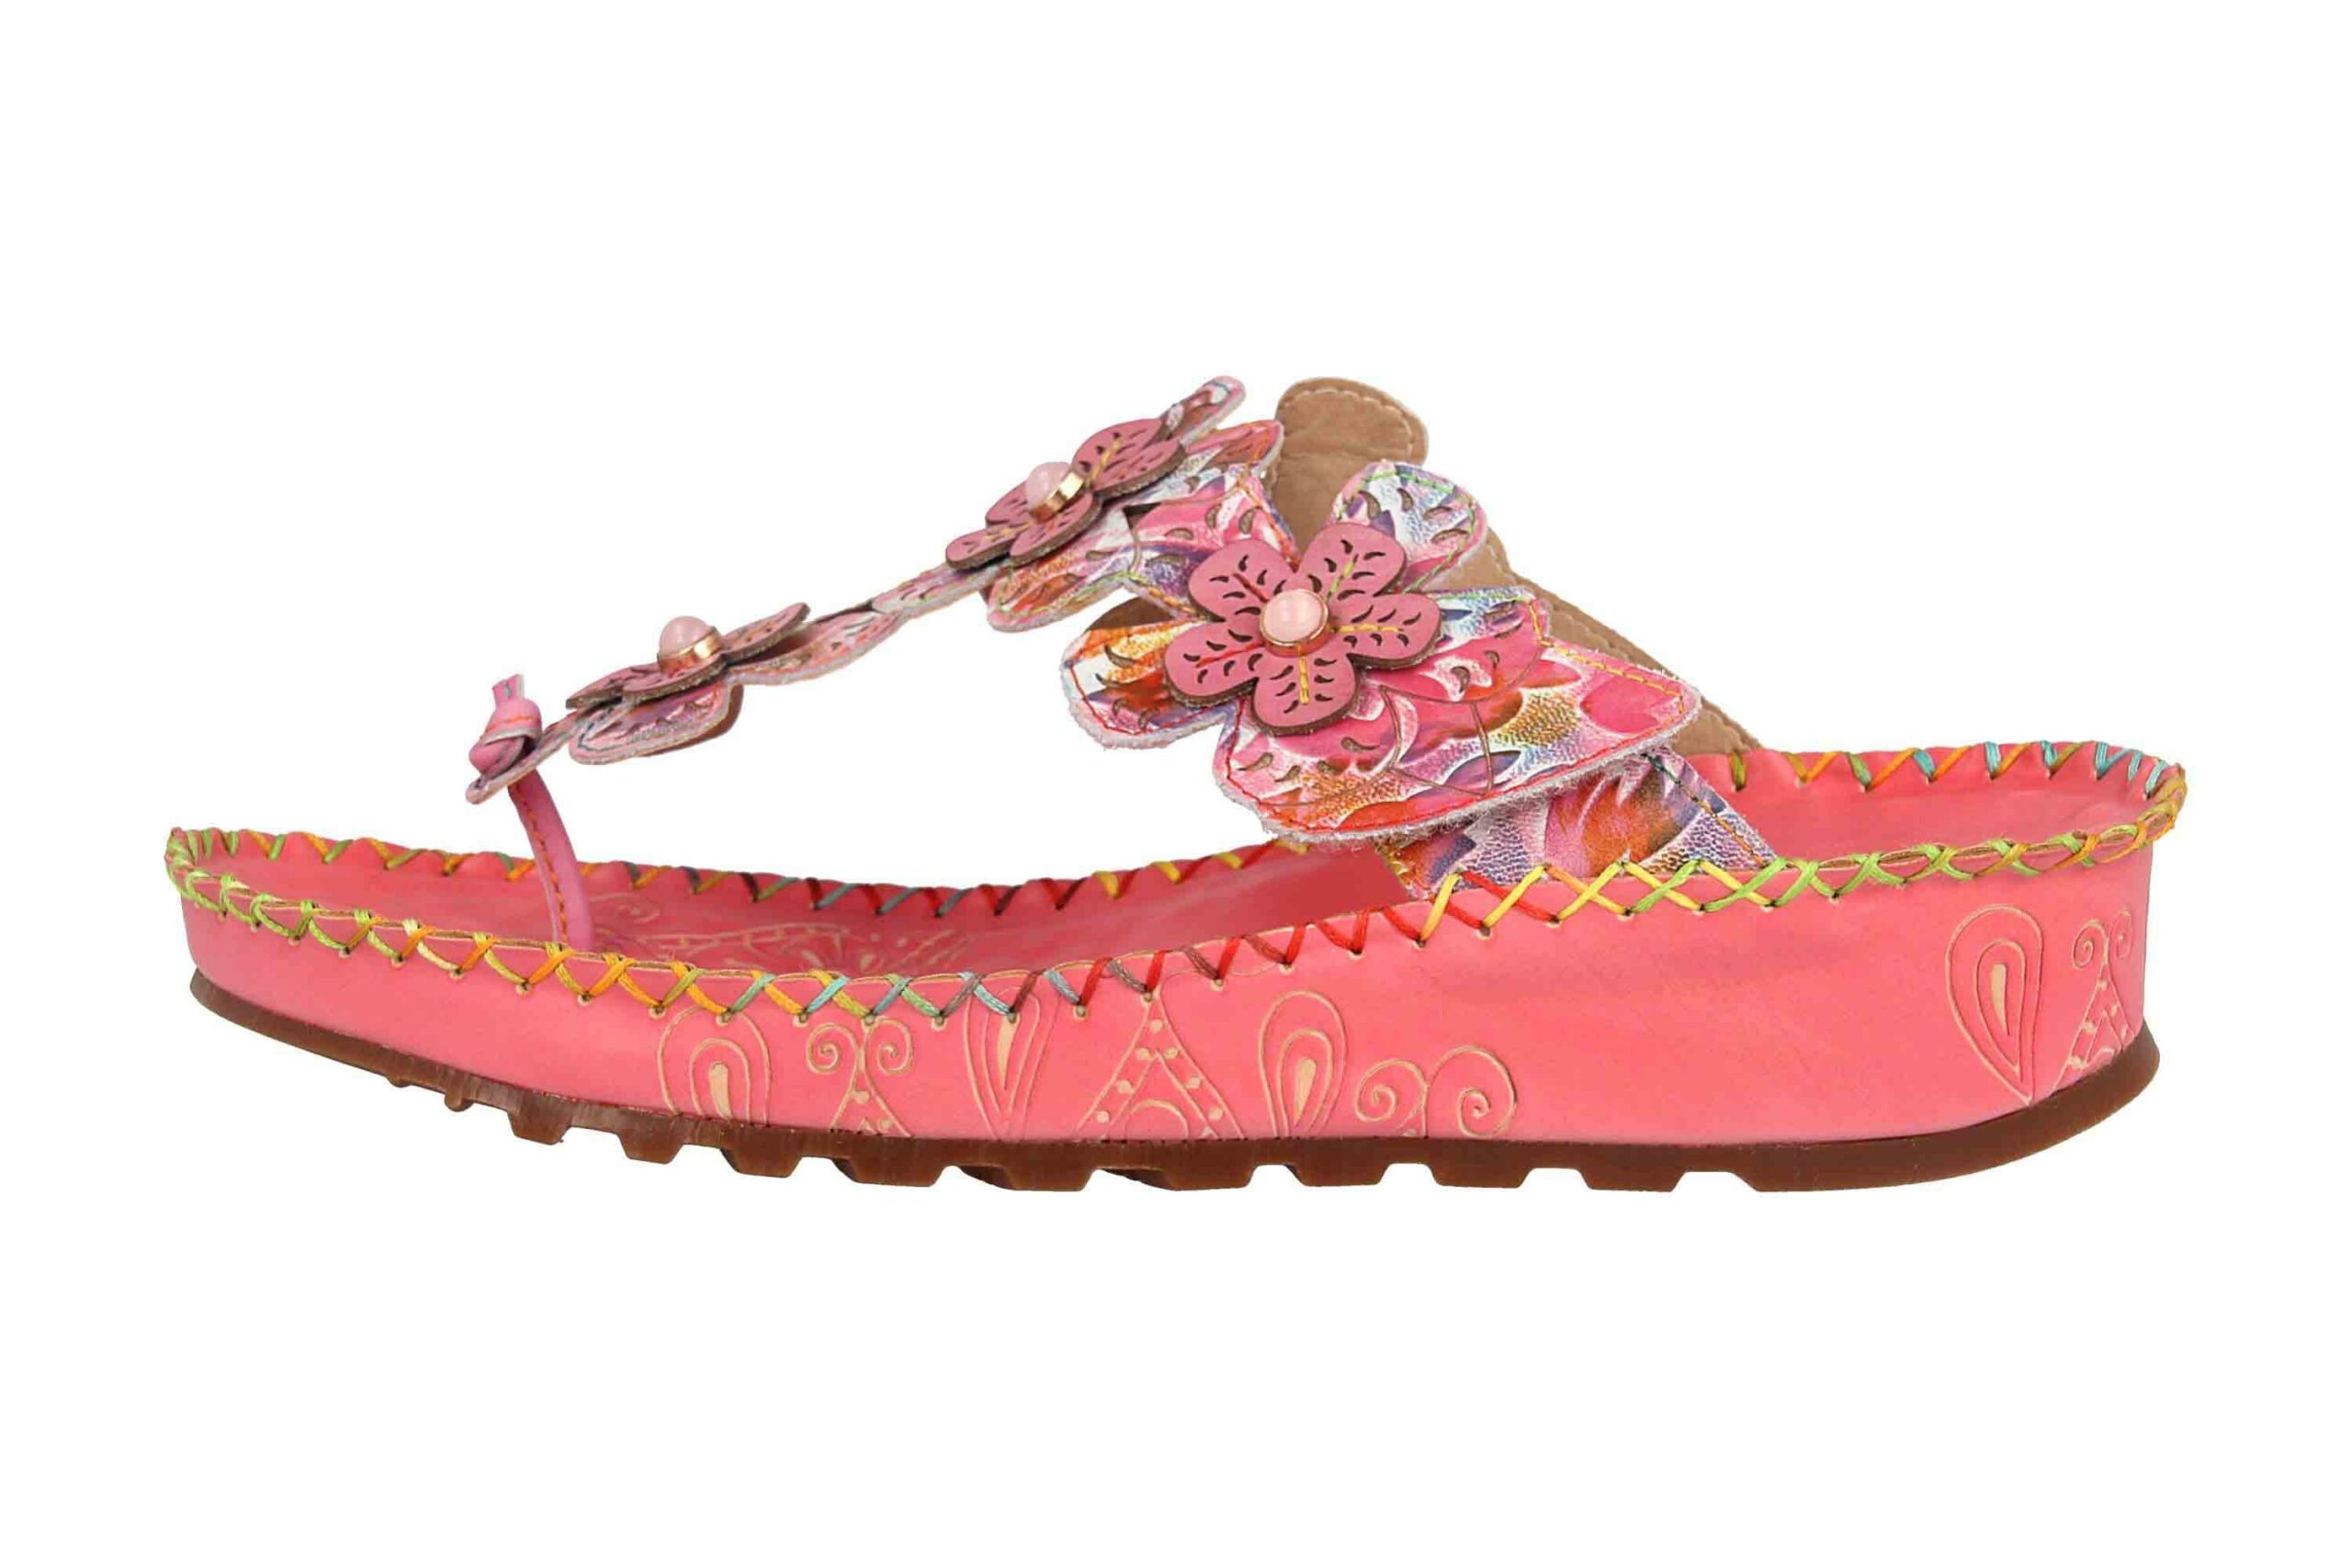 Spring Footwear Zehentrenner in Übergrößen Rosa Crocus-Pkm große Damenschuhe